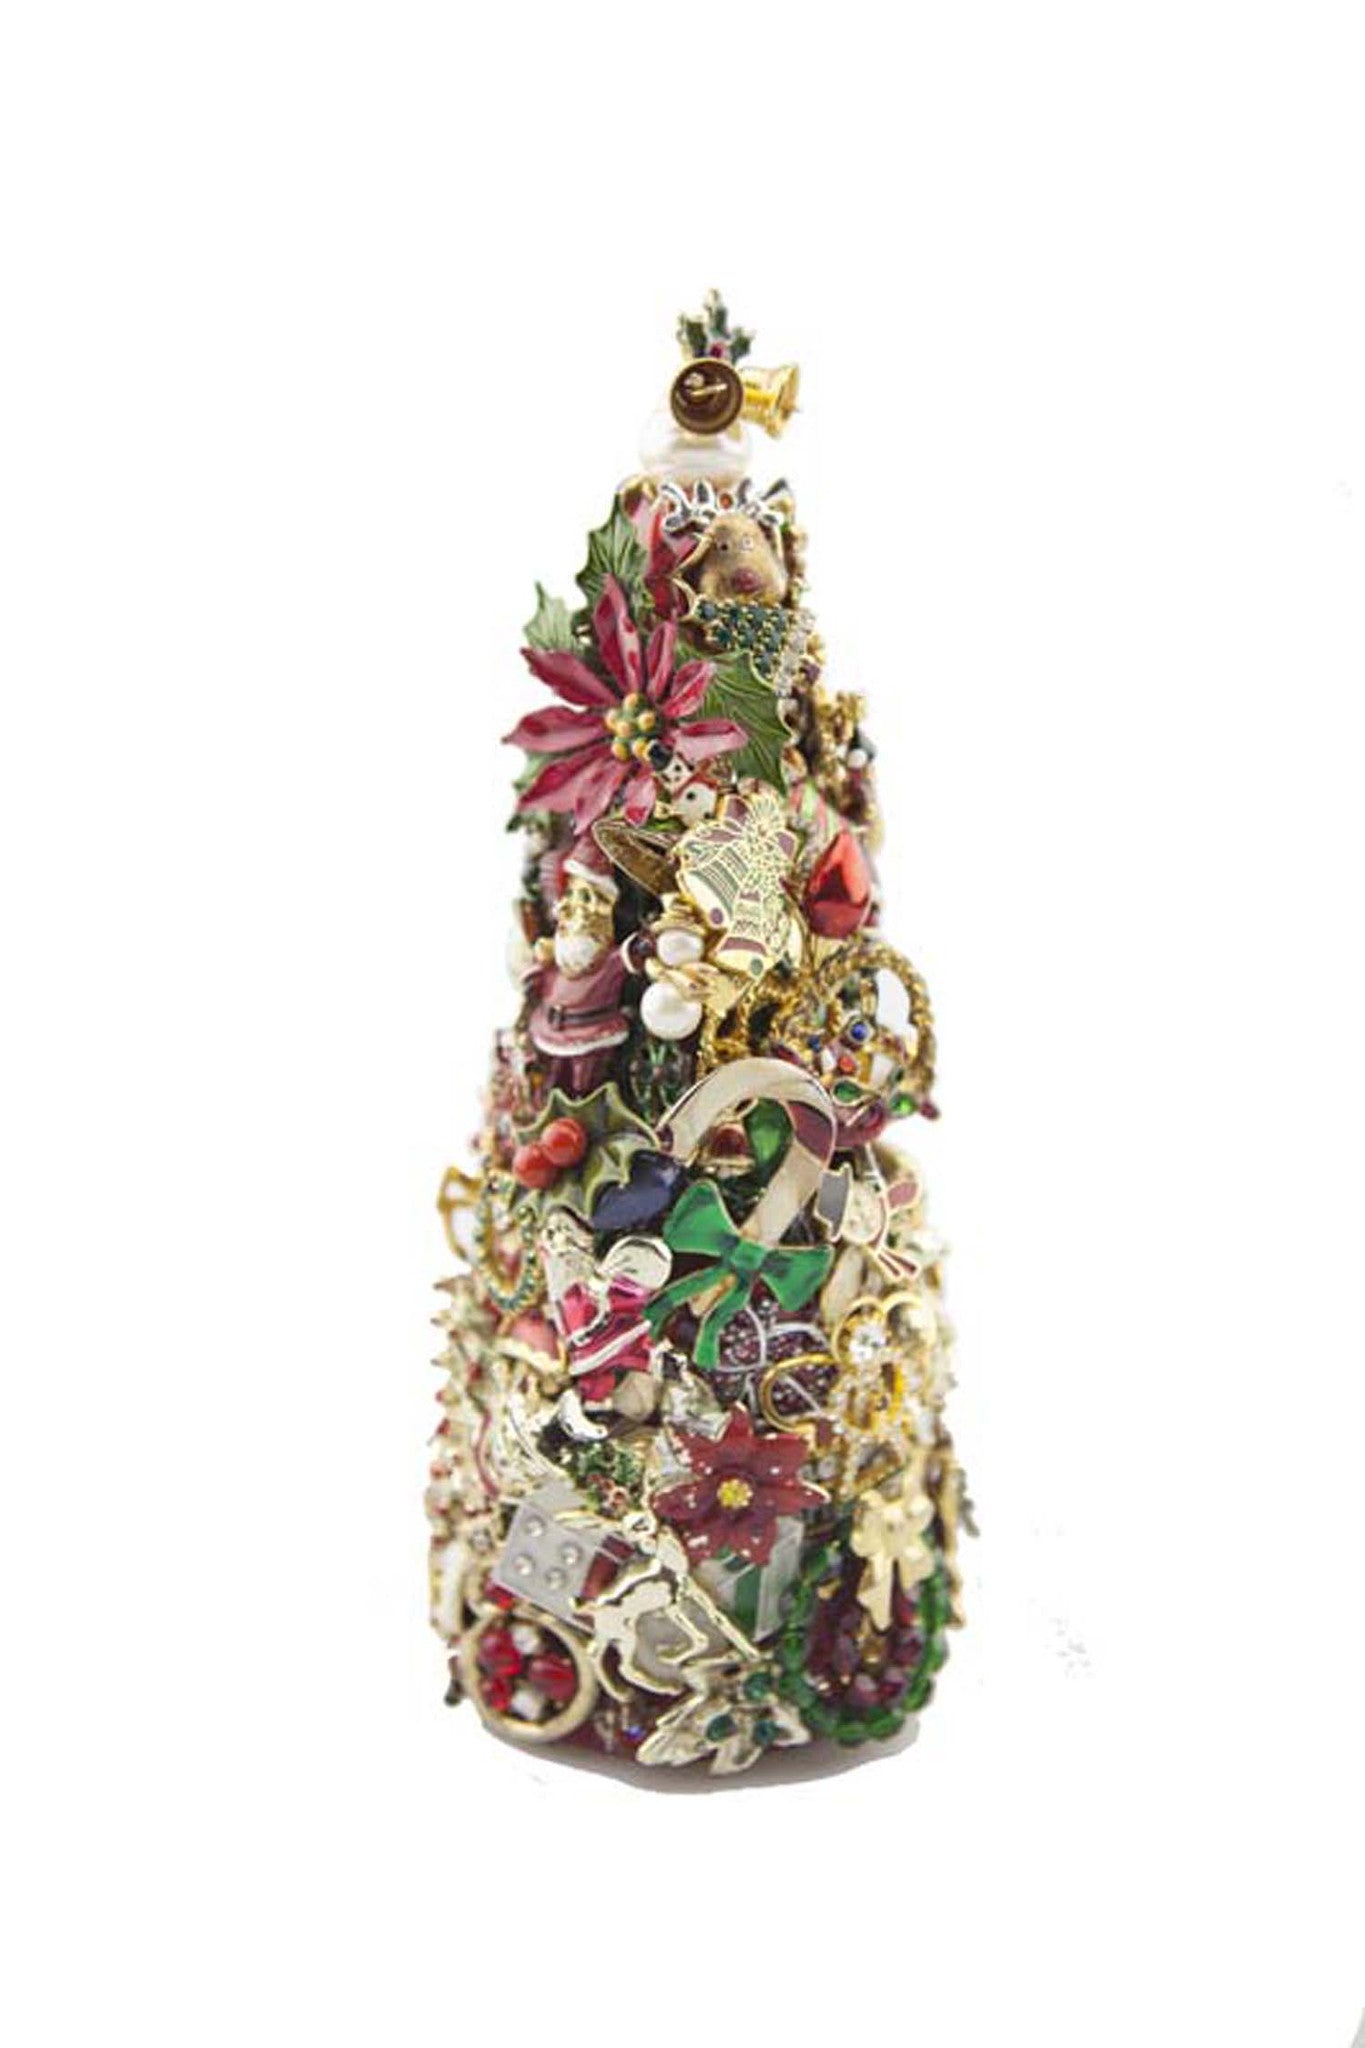 Beyond The Jewel Box-8" Tree/Christmas Colors